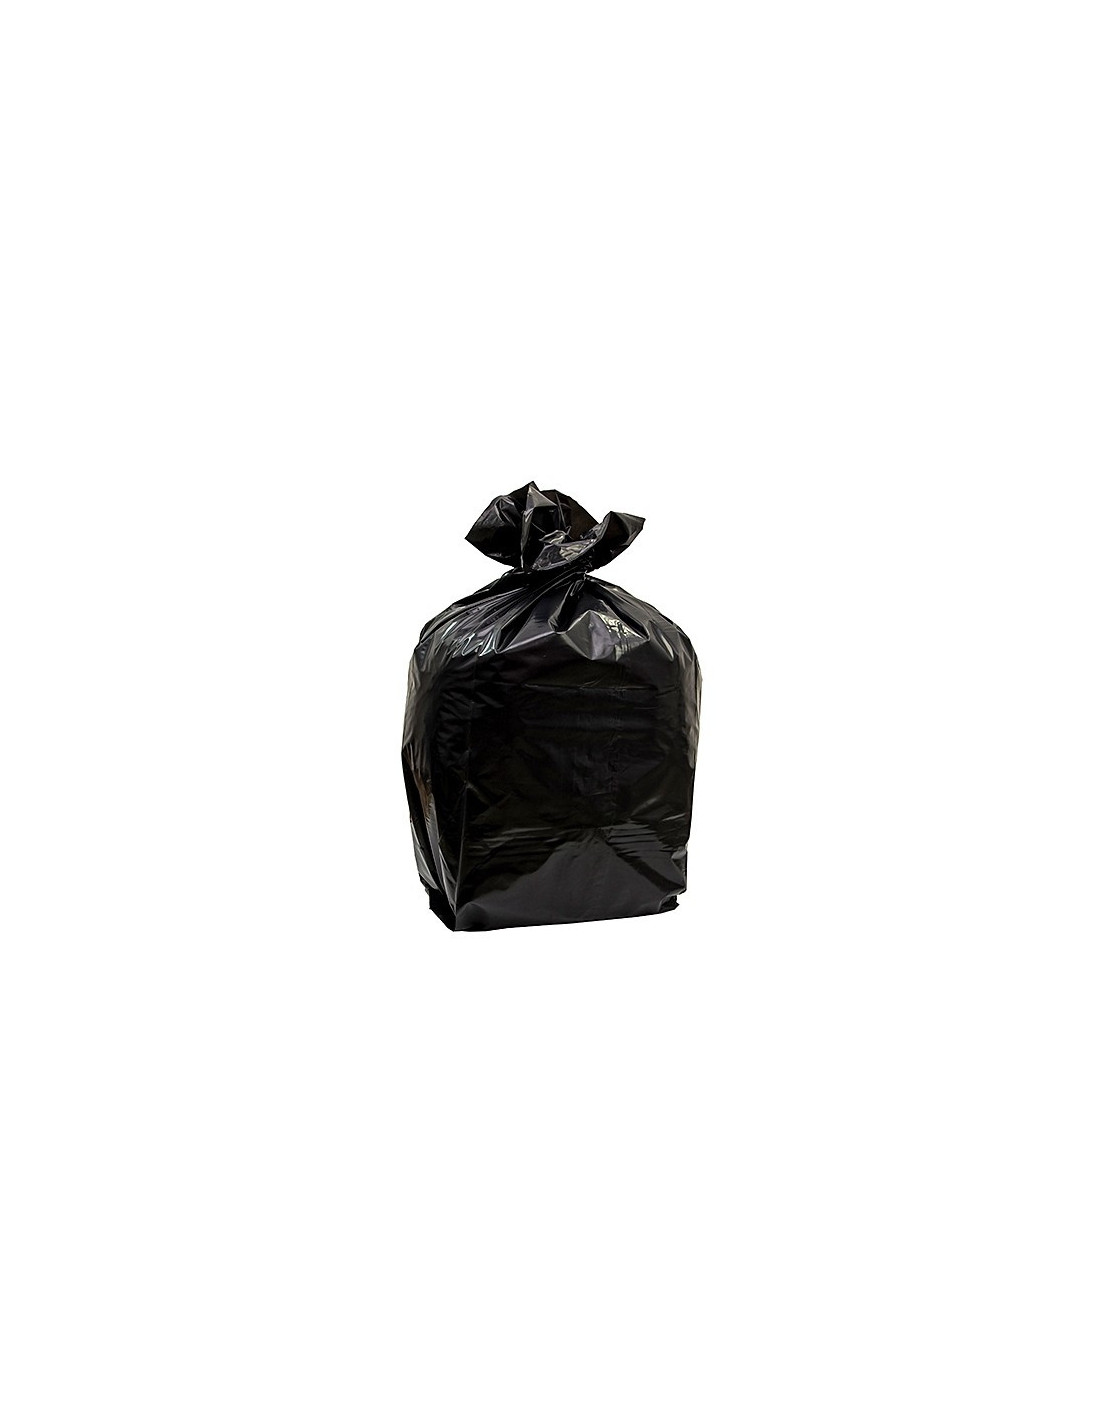 Sacchi neri raccolta differenziata cm 70x110 da 110 litri - Sakge